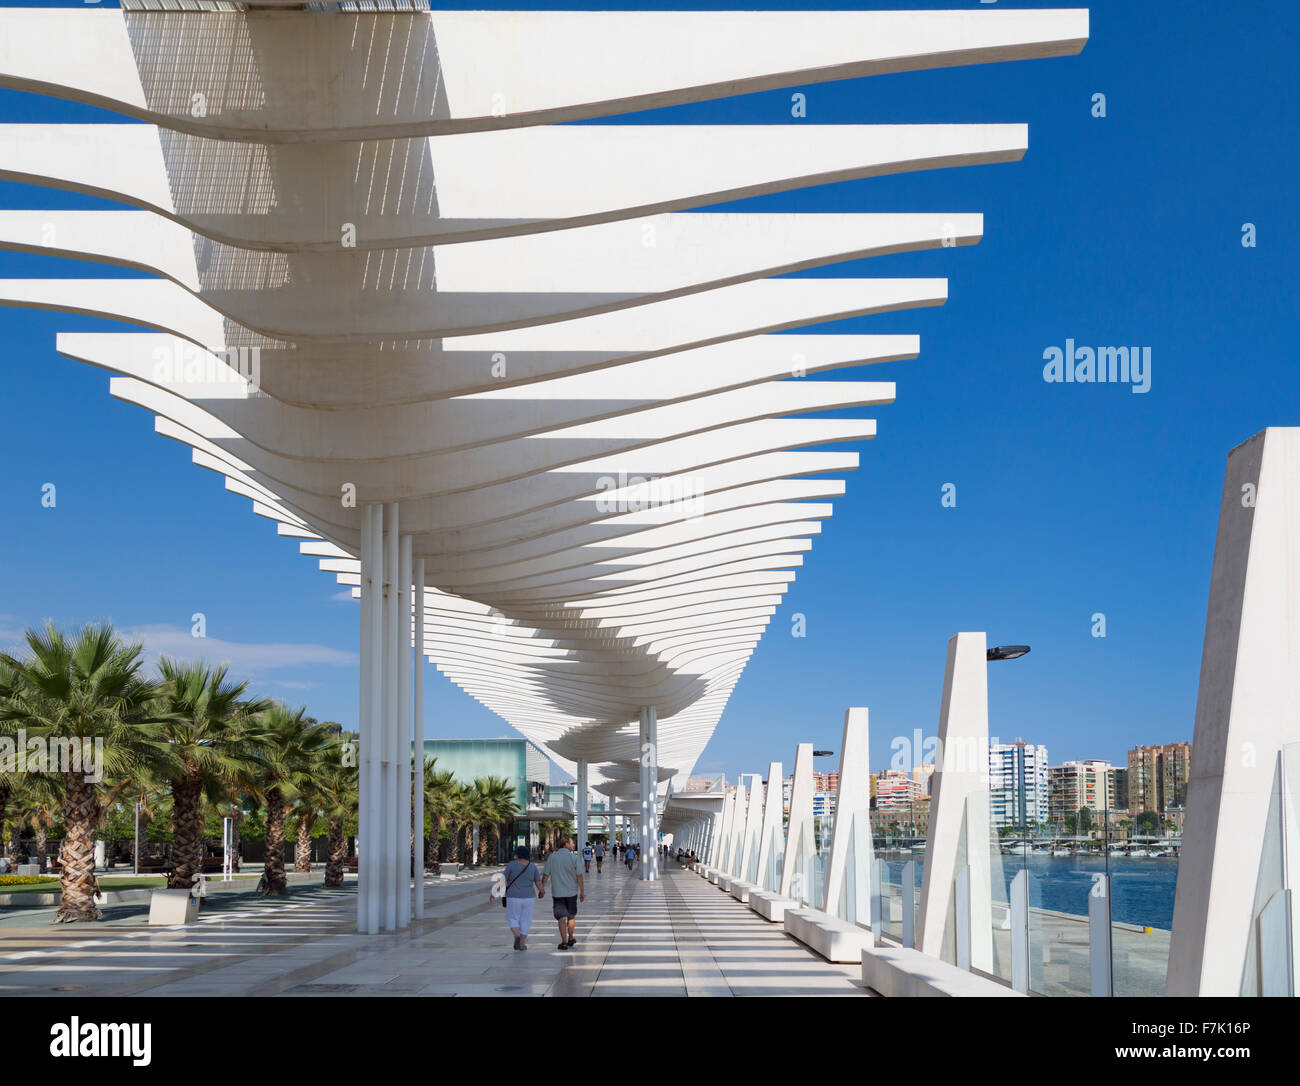 Malaga, Costa del Sol, provincia di Malaga, Andalusia, Spagna meridionale. El Muelle Onu (Dock uno). Passeggiata sul mare al porto di Malaga. Foto Stock